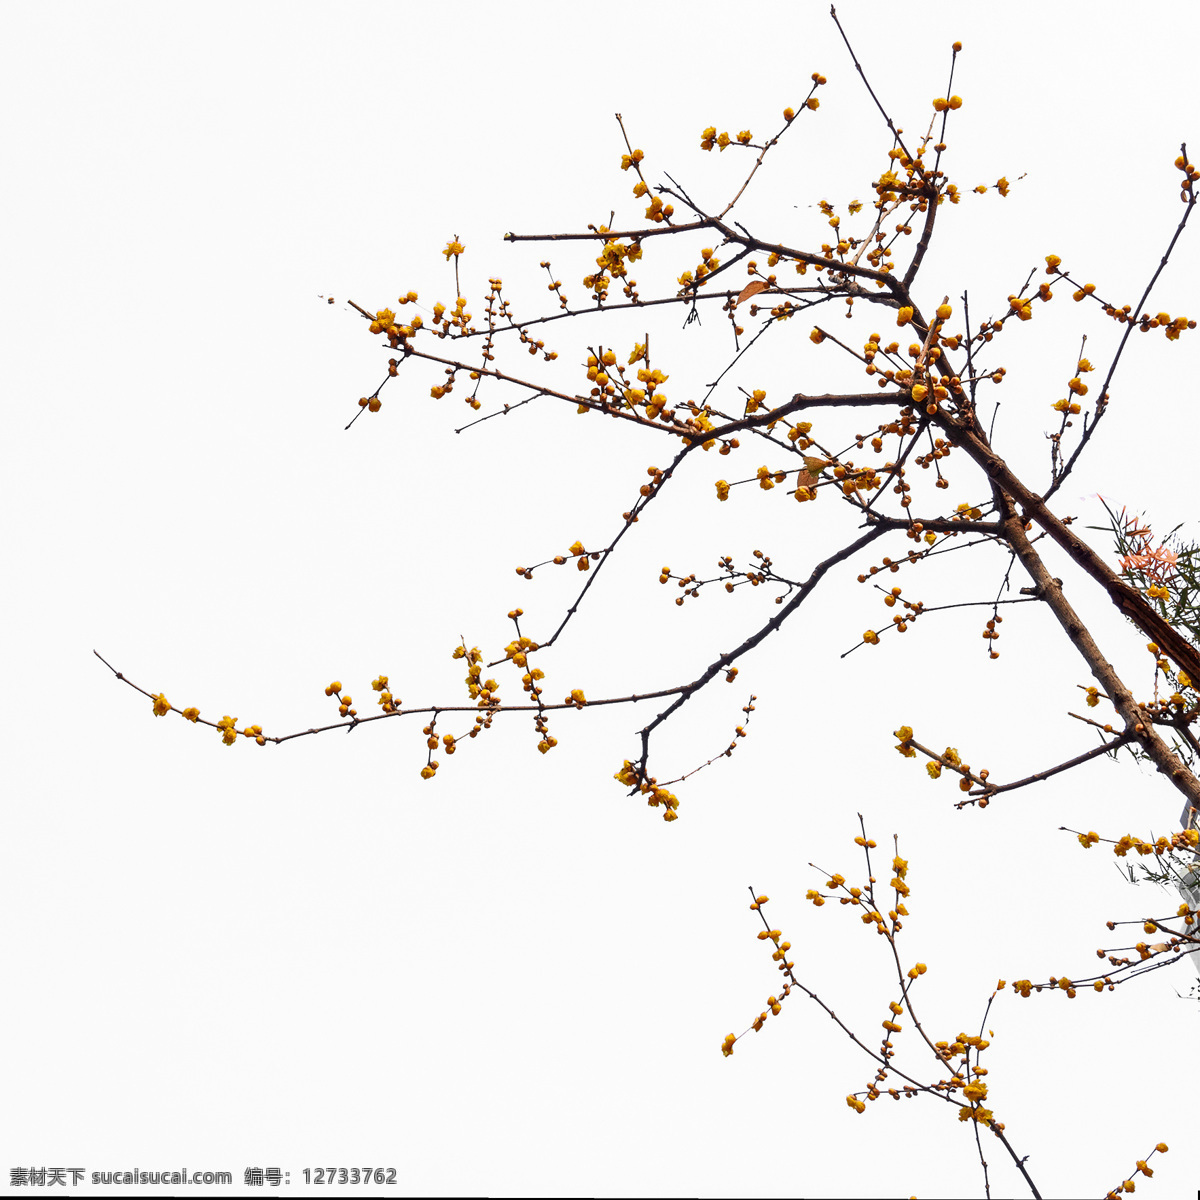 白背景腊梅花 树枝 植物 腊梅花 花卉 冬天里的花朵 传统绘画素材 摄影素材 生物世界 树木树叶